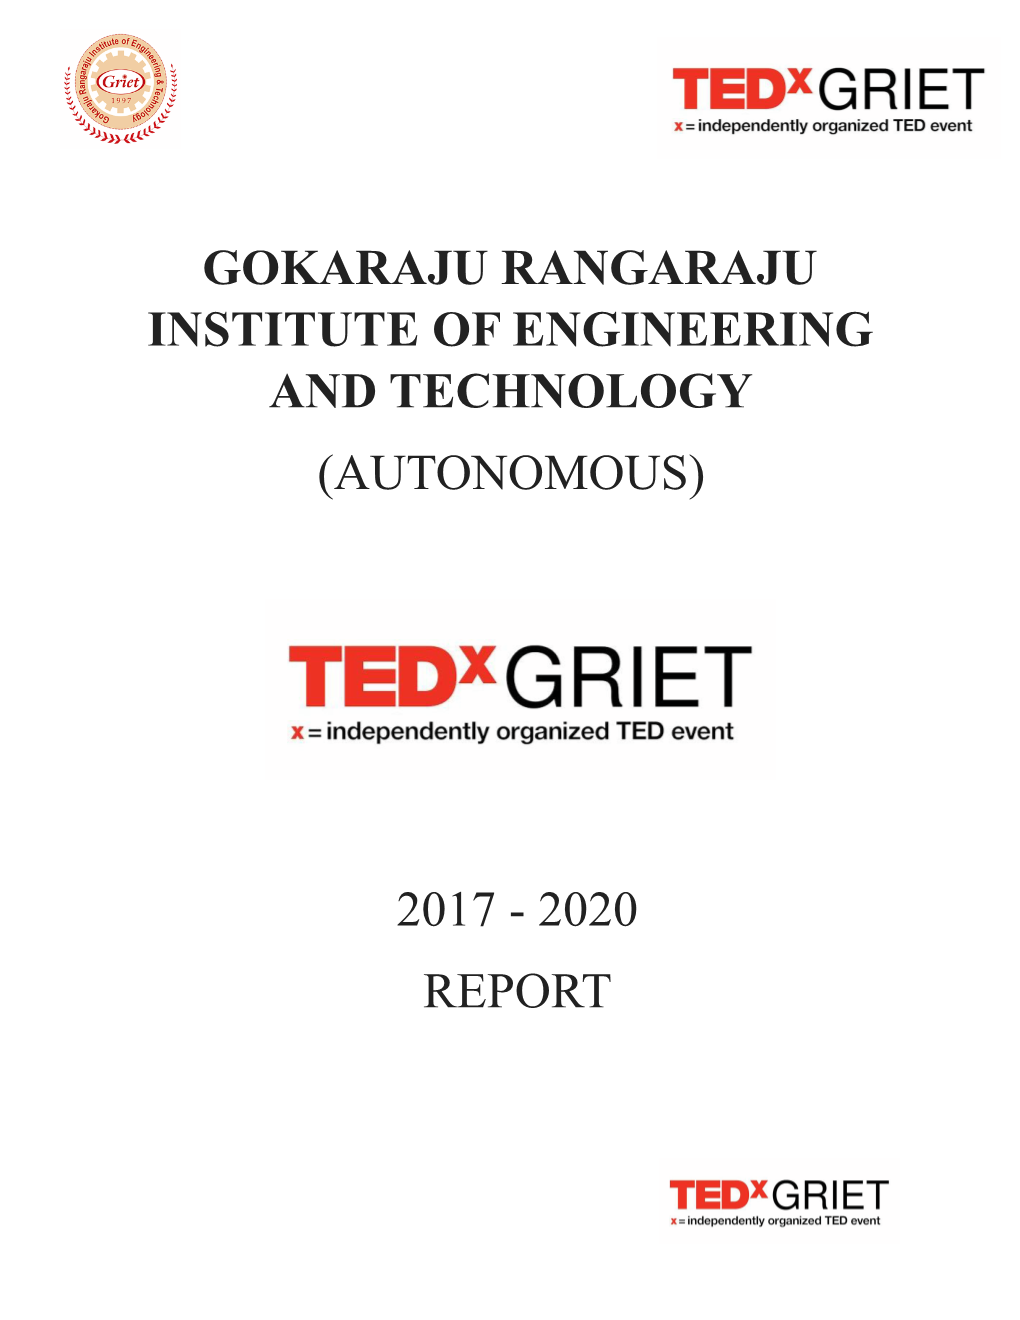 Tedxgriet Report